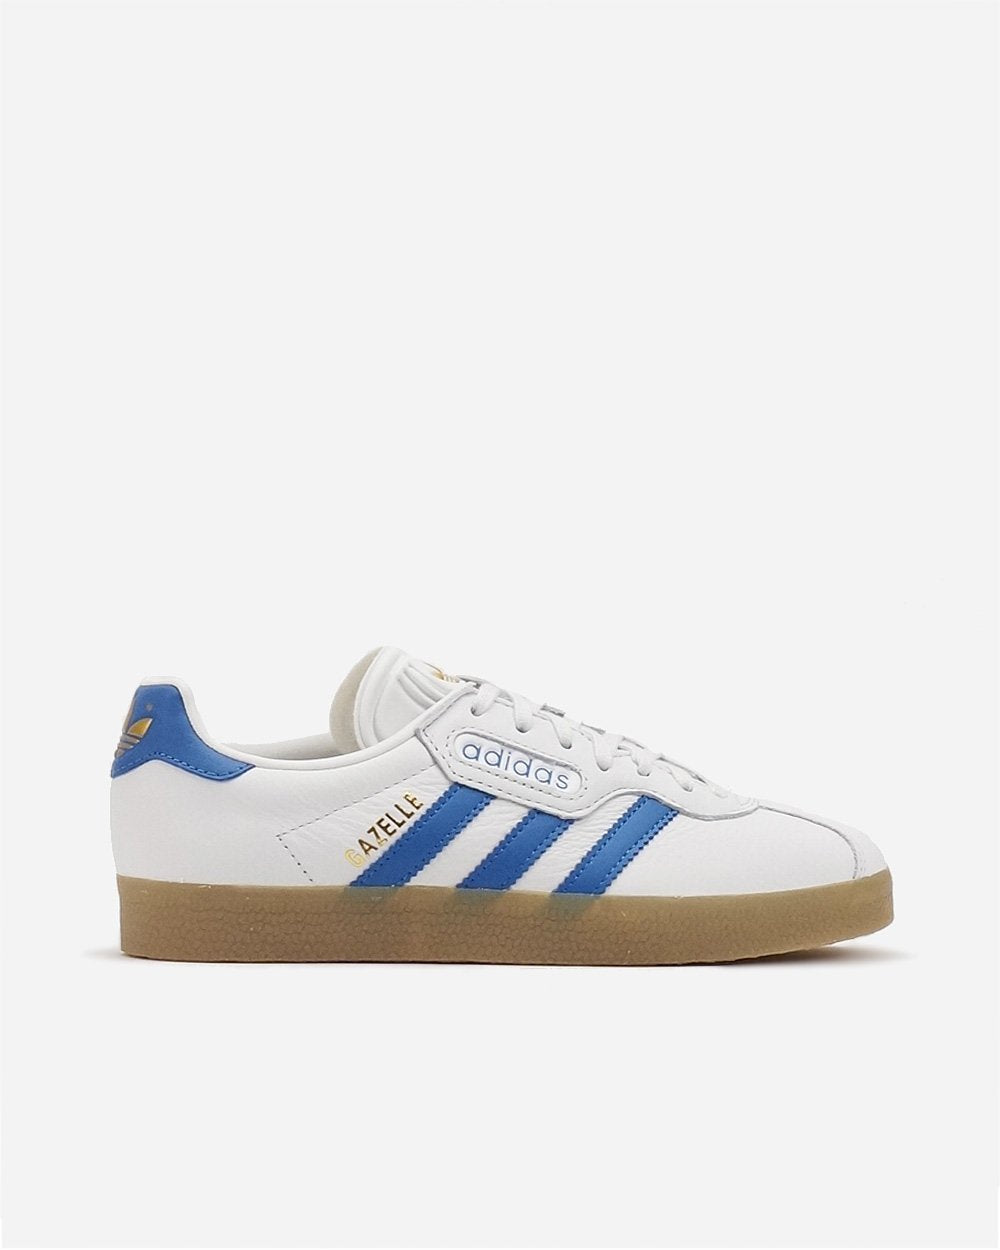 adidas gazelle white blue stripes